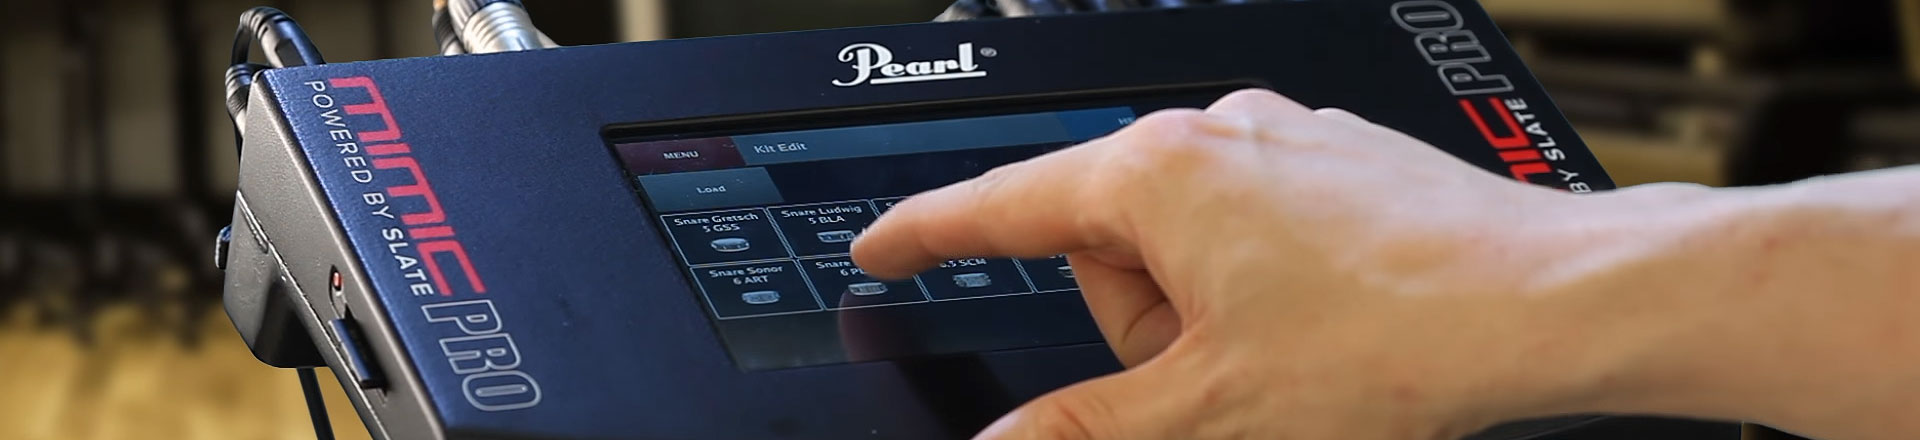 Nowe informacje na temat preorderowych Pearl Mimic Pro